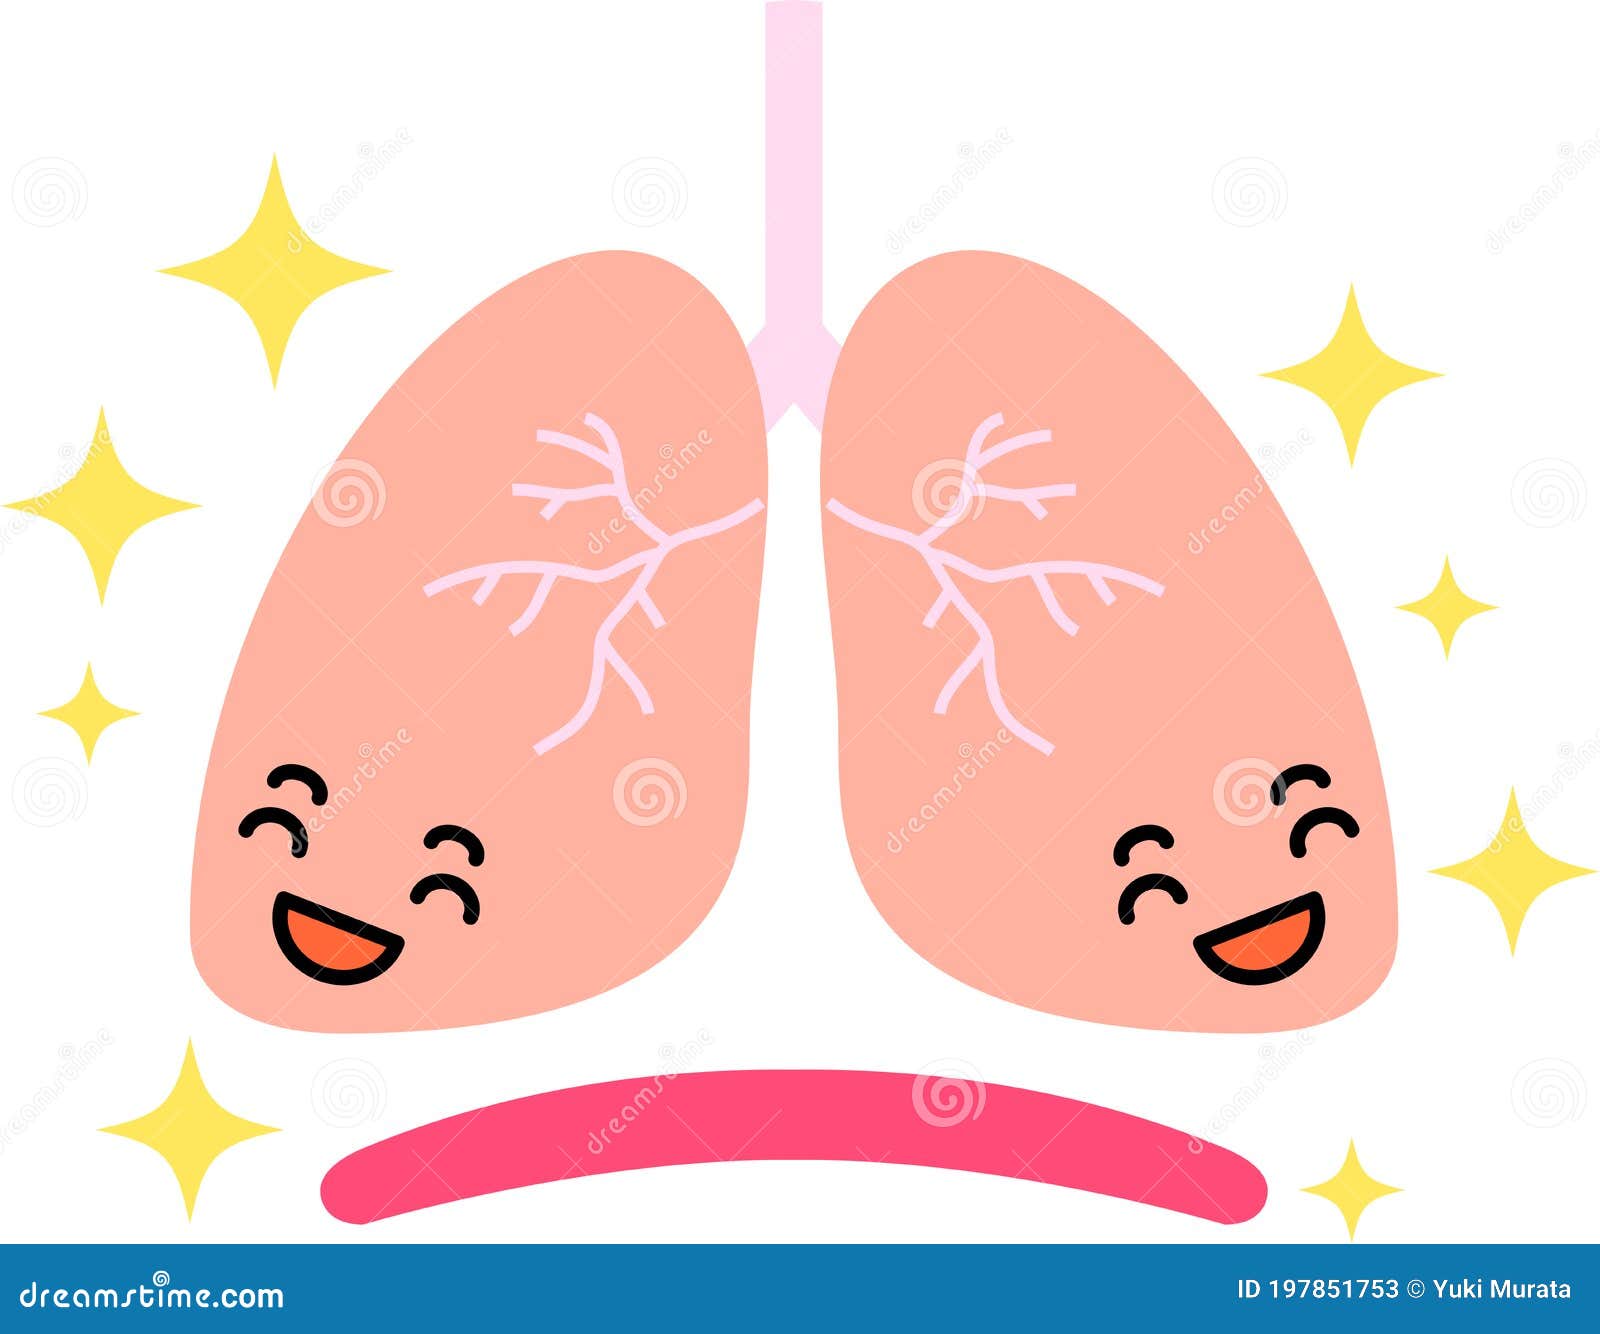 肺png圖案素材 | PNG和向量圖 | 透明背景圖片 | 免費下载 - Pngtree